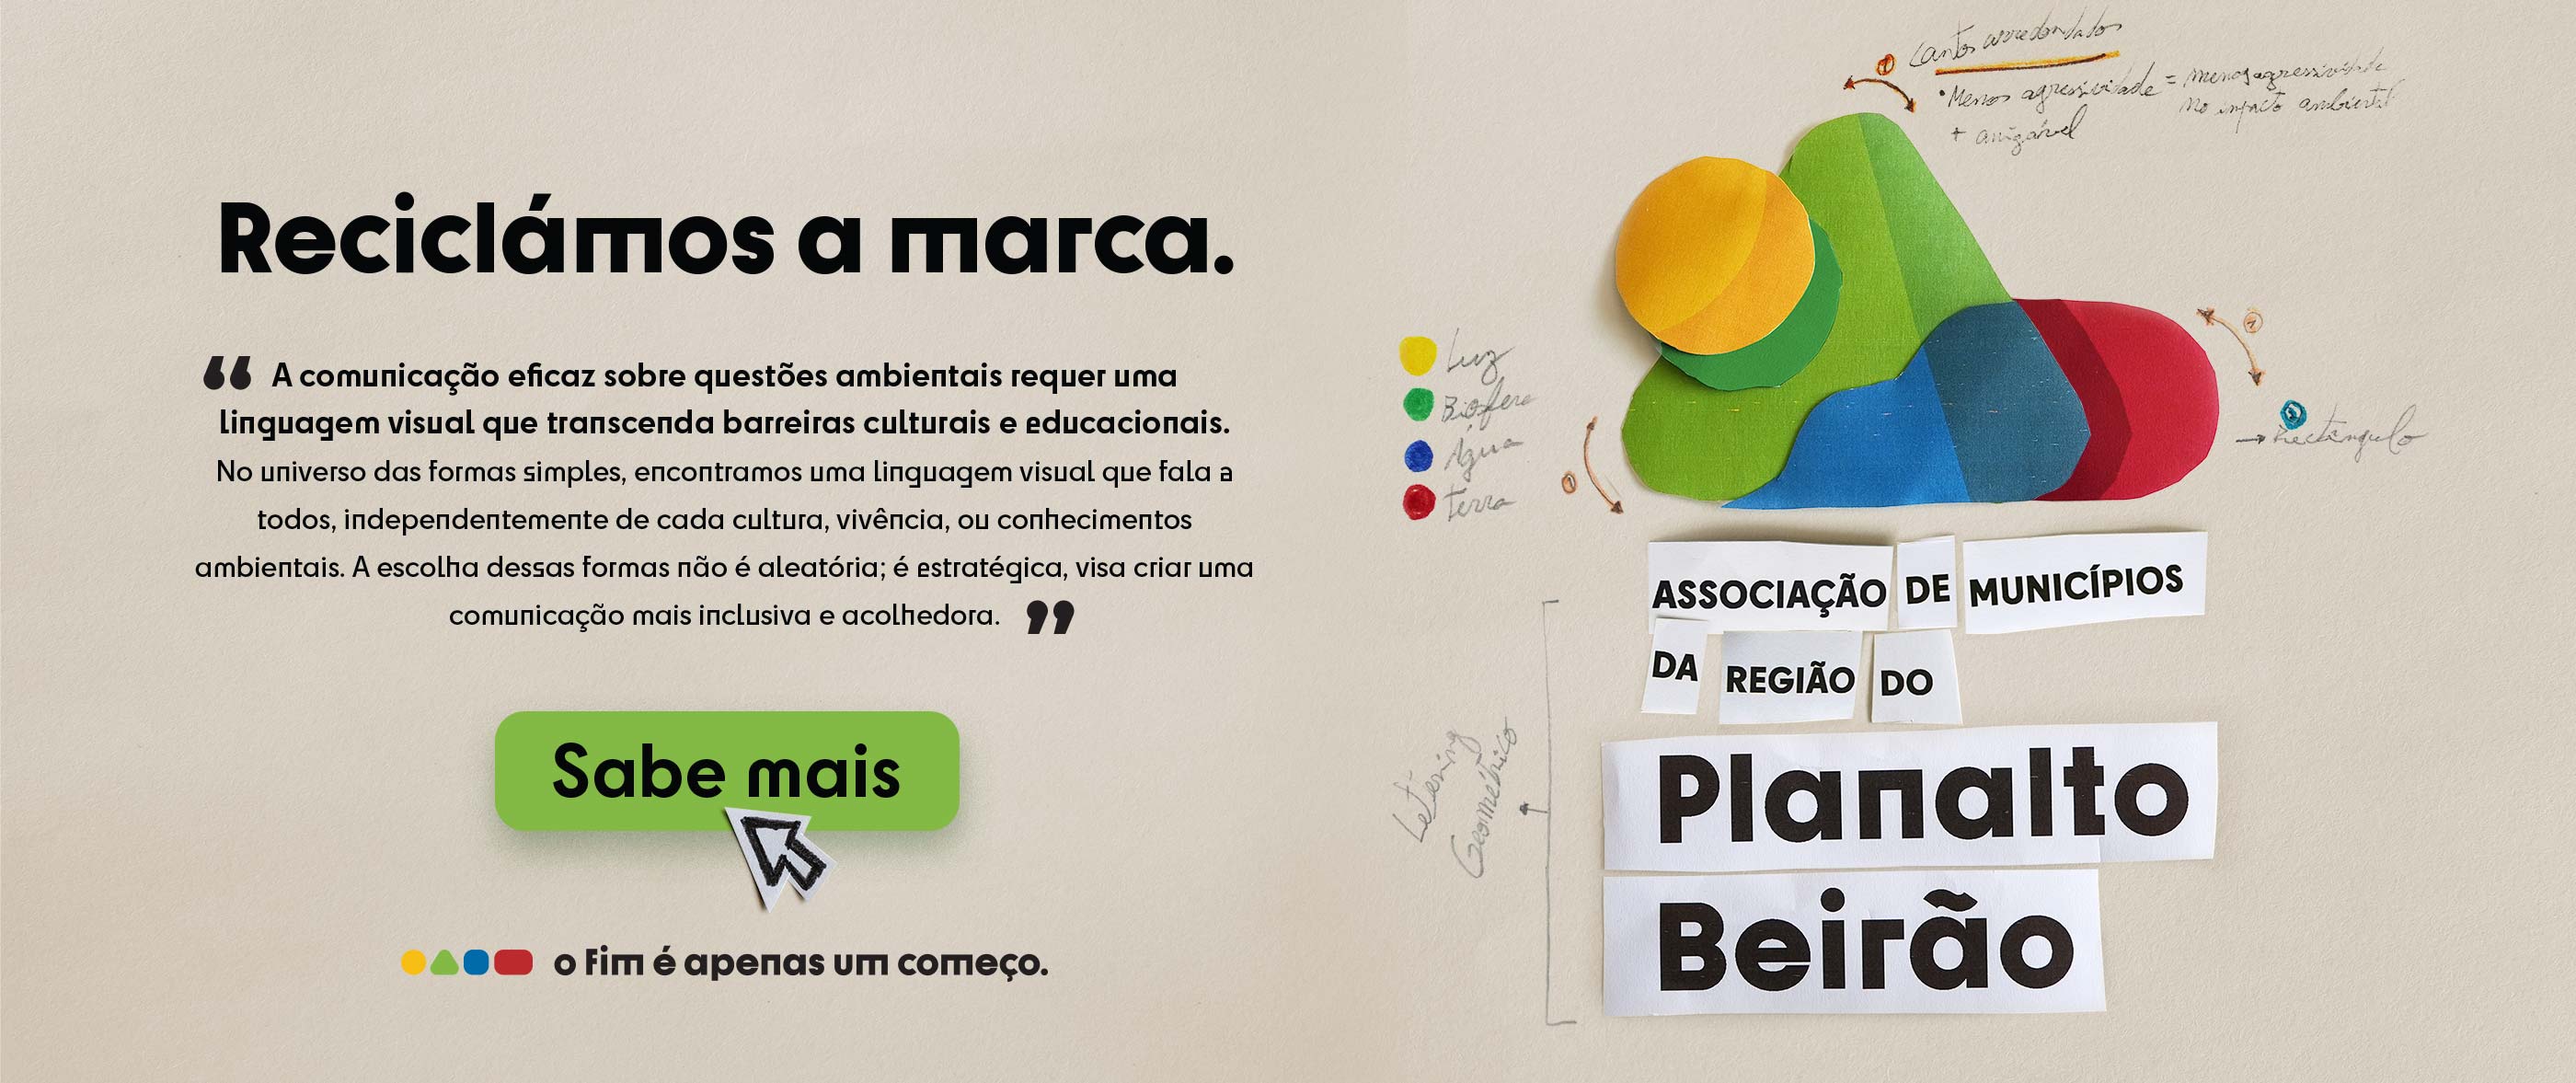 Novo Branding Planalto Beirão